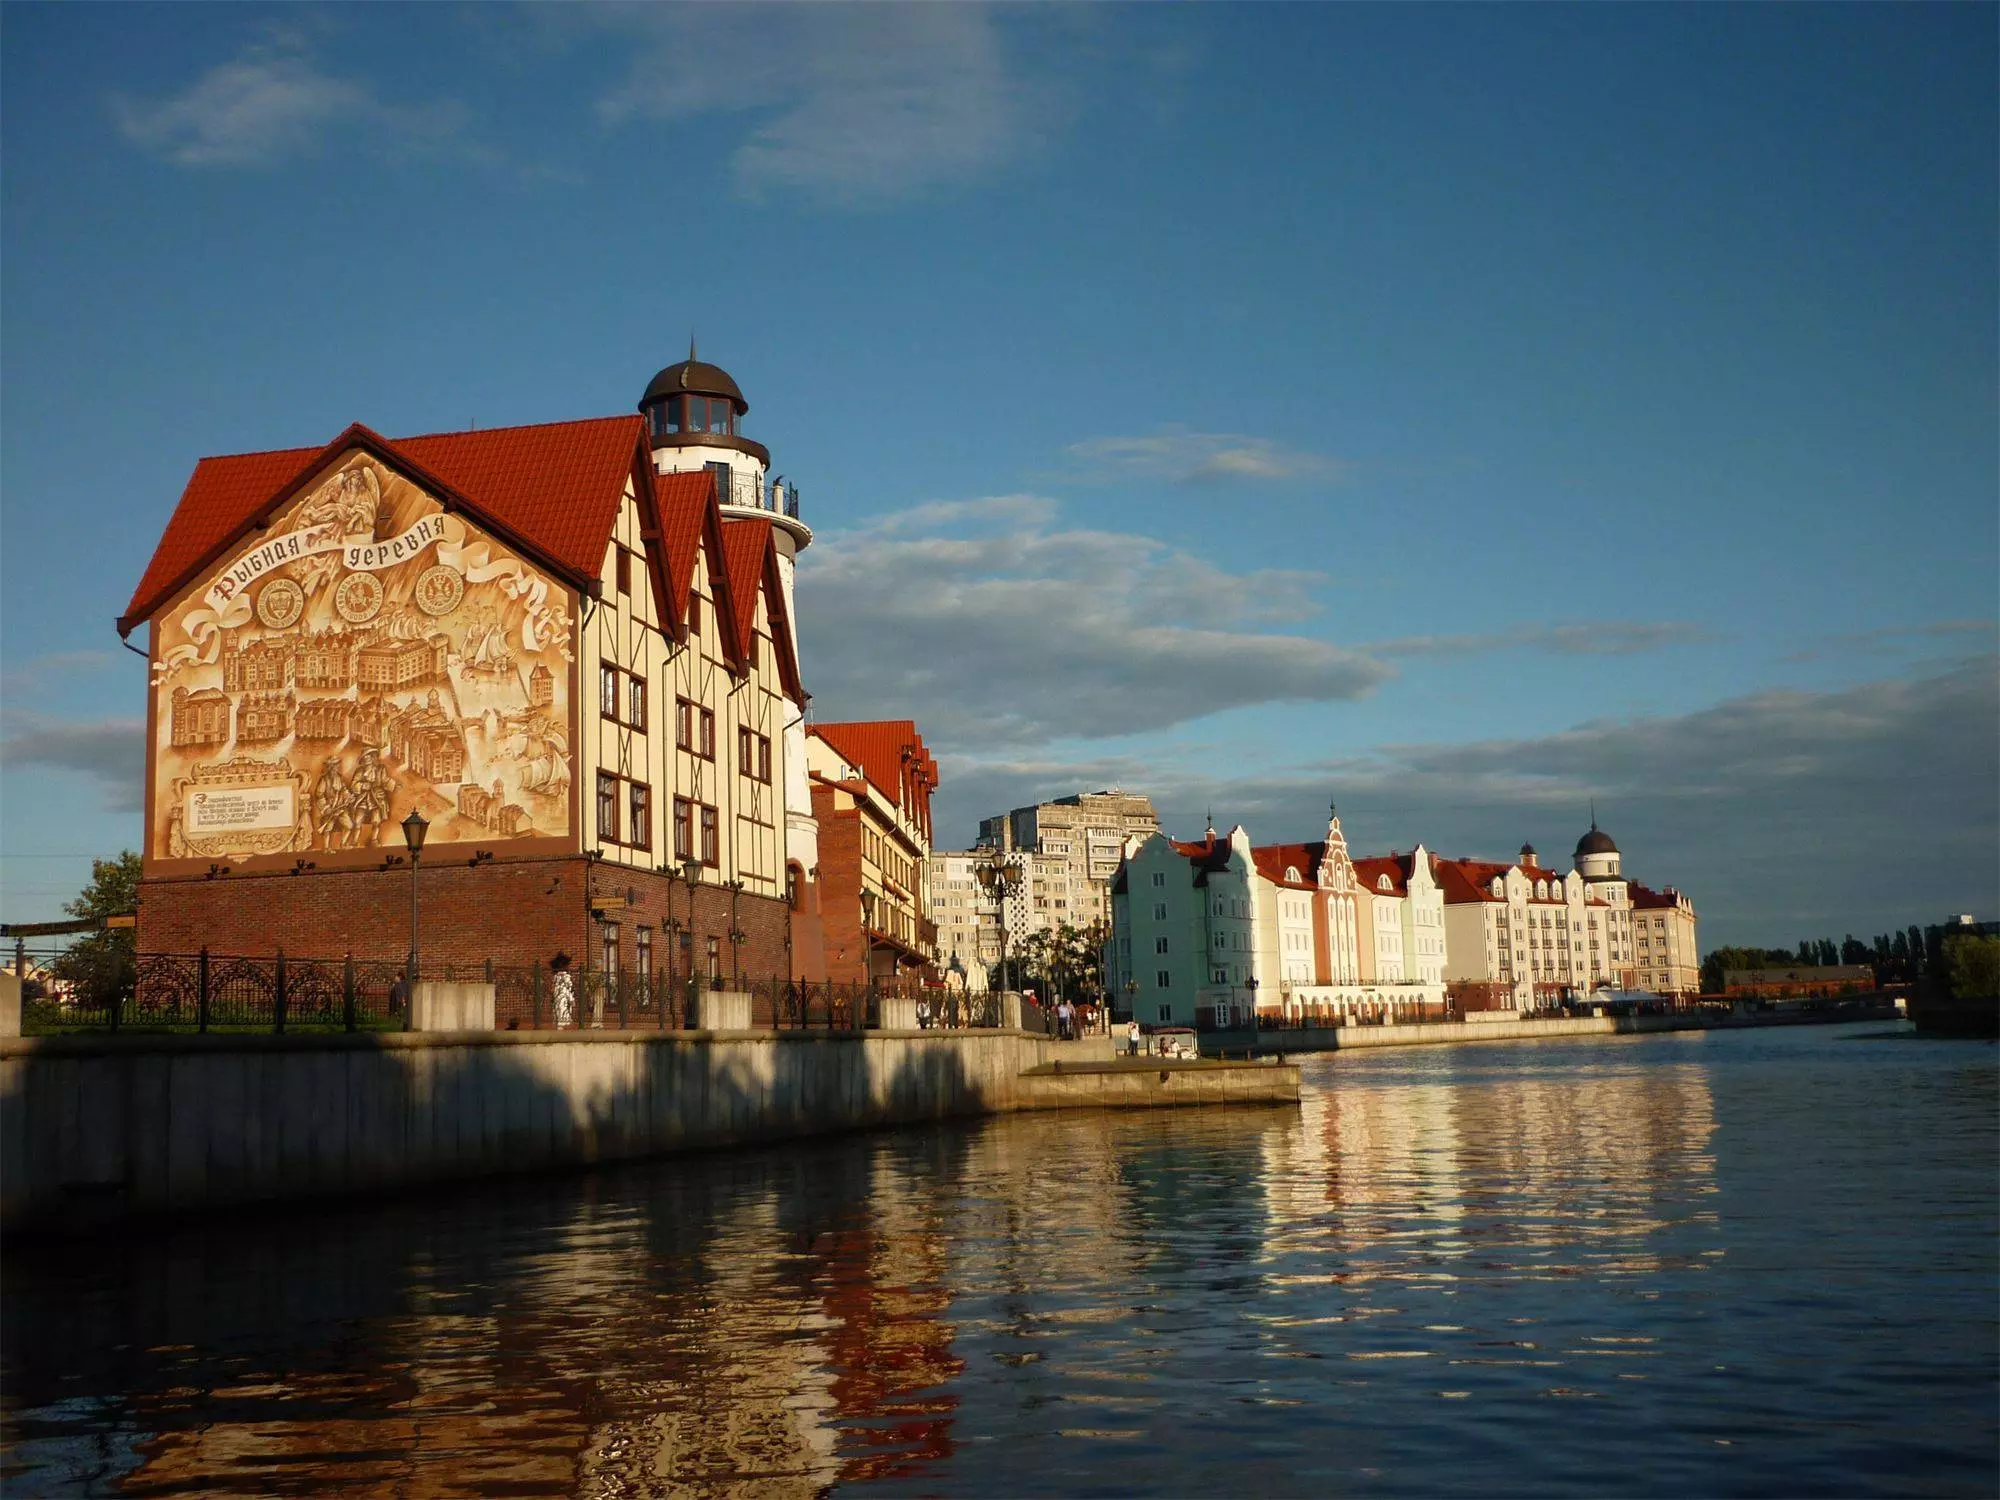 Рыбная деревня в калининграде - новая достопримечательность в старом стиле – так удобно!  traveltu.ru